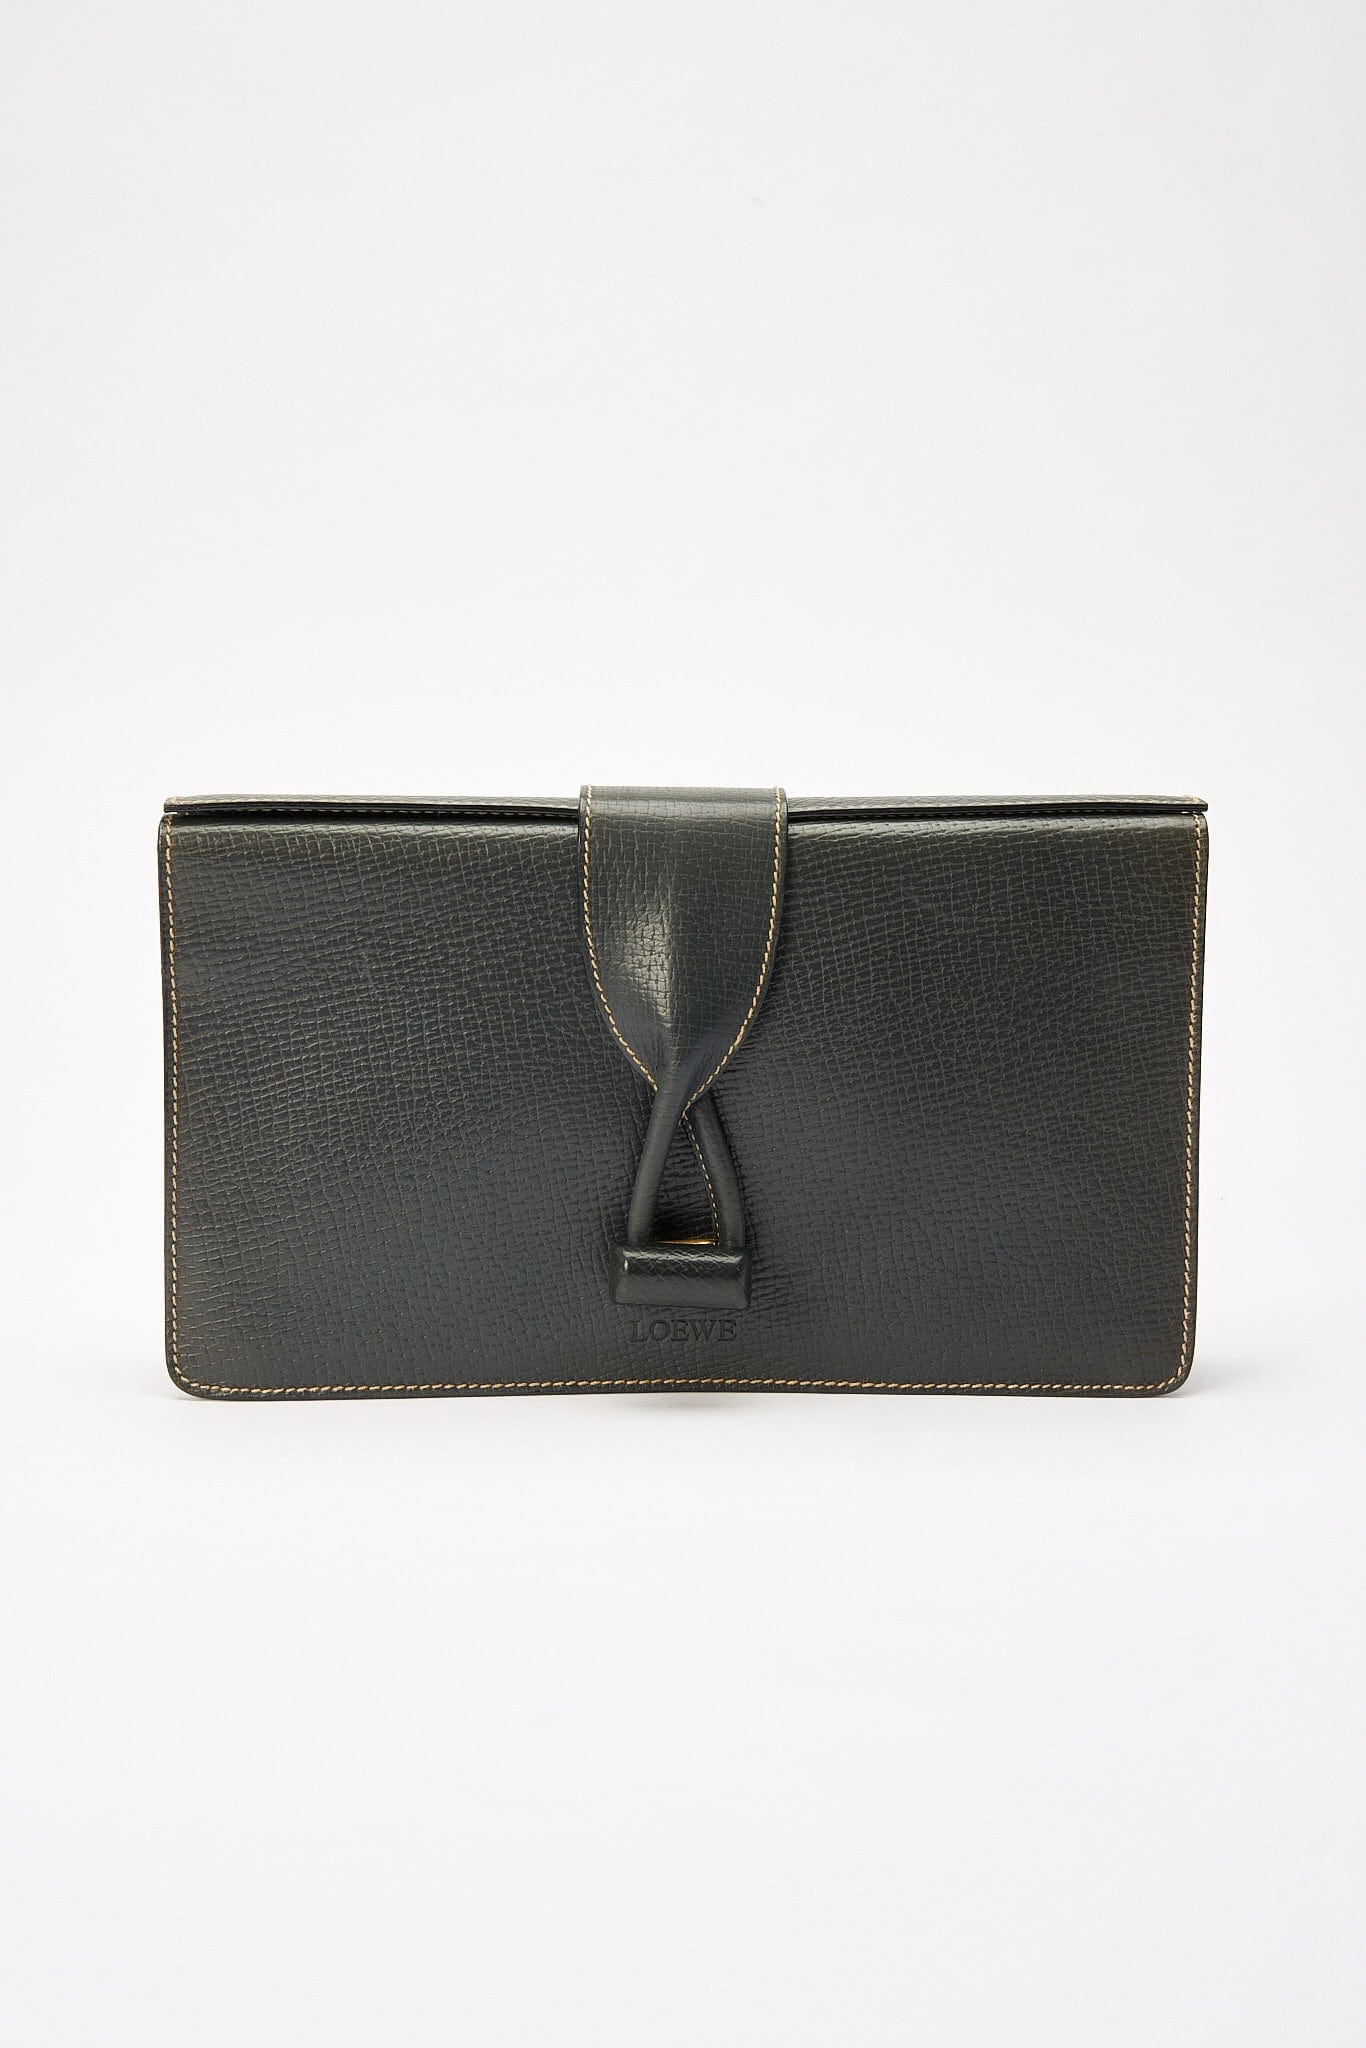 Vintage Loewe Leather Clutch Bag